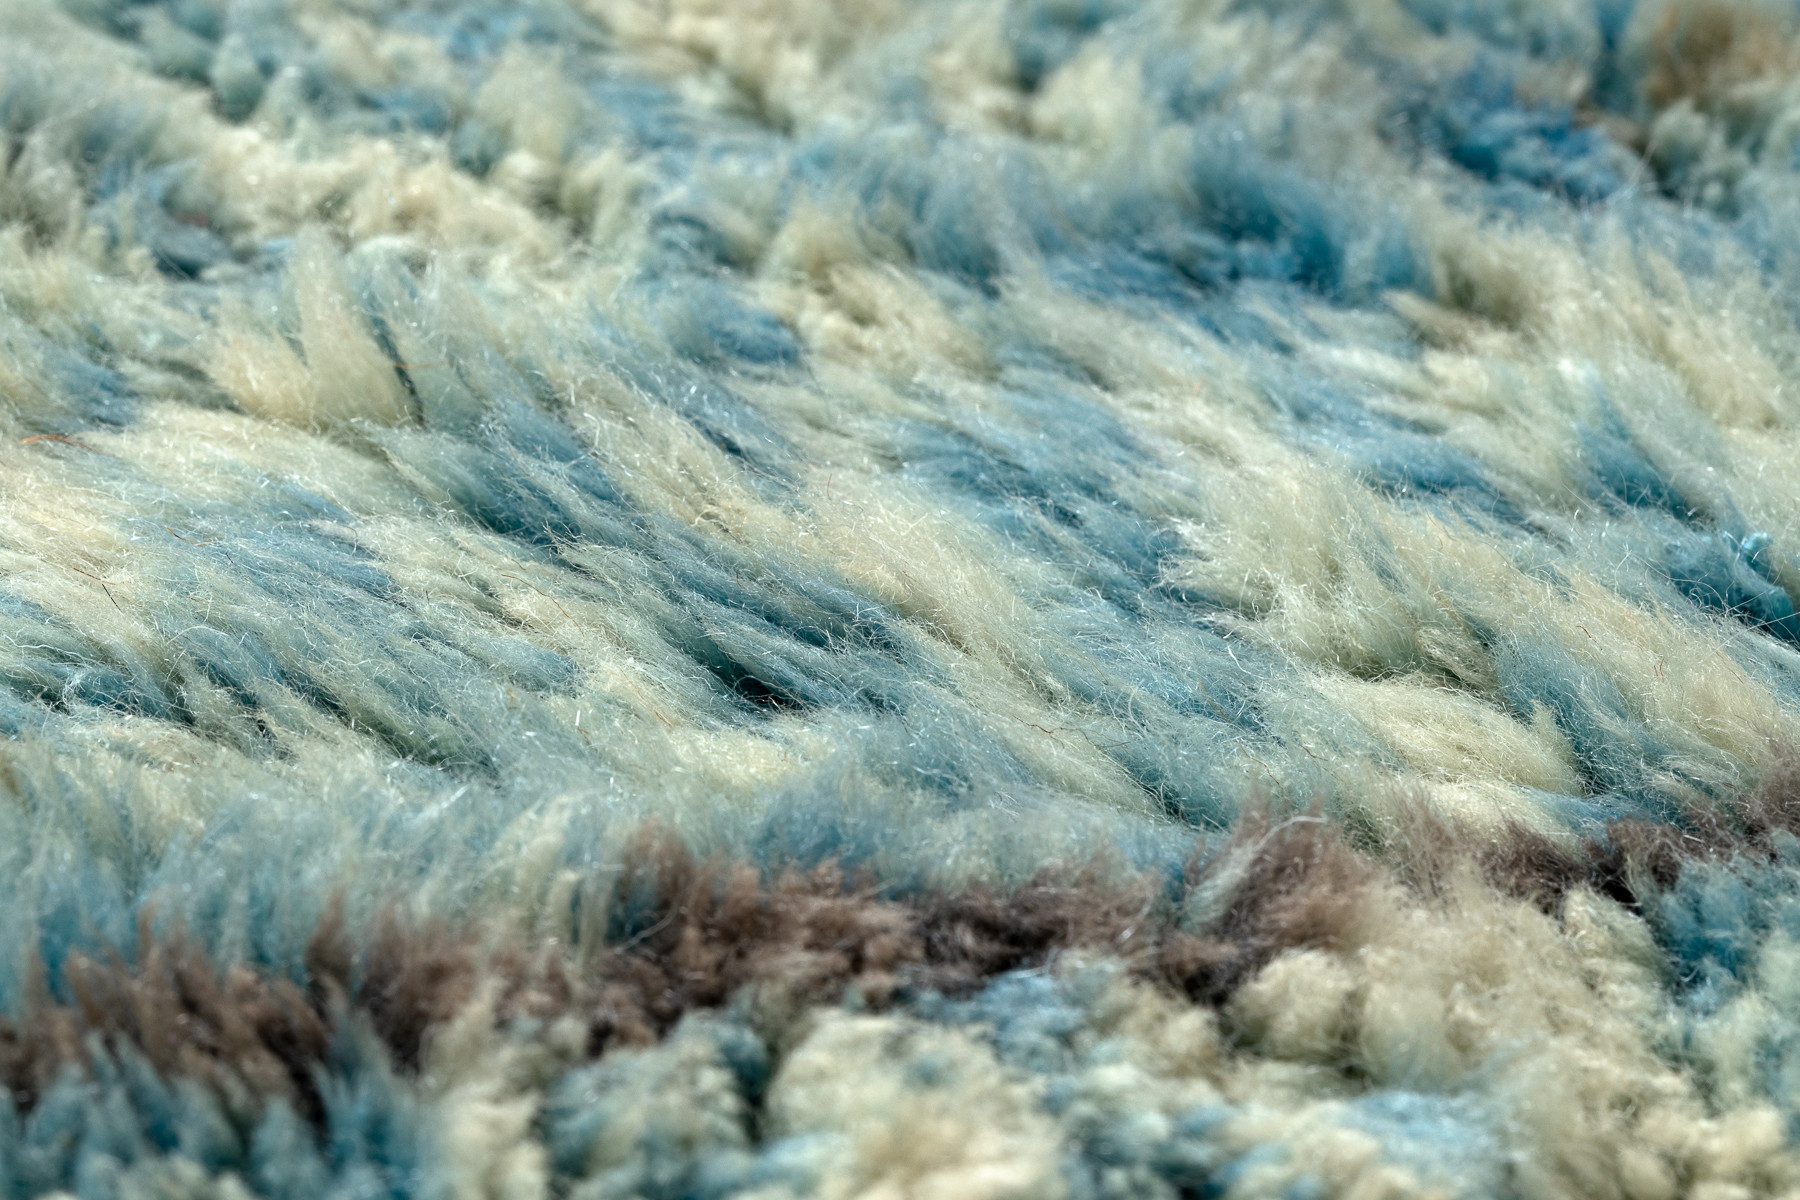 Ručně tkaný vlněný koberec BERBER MR4270 Beni Mrirt berber abstraktní, béžový / modrý